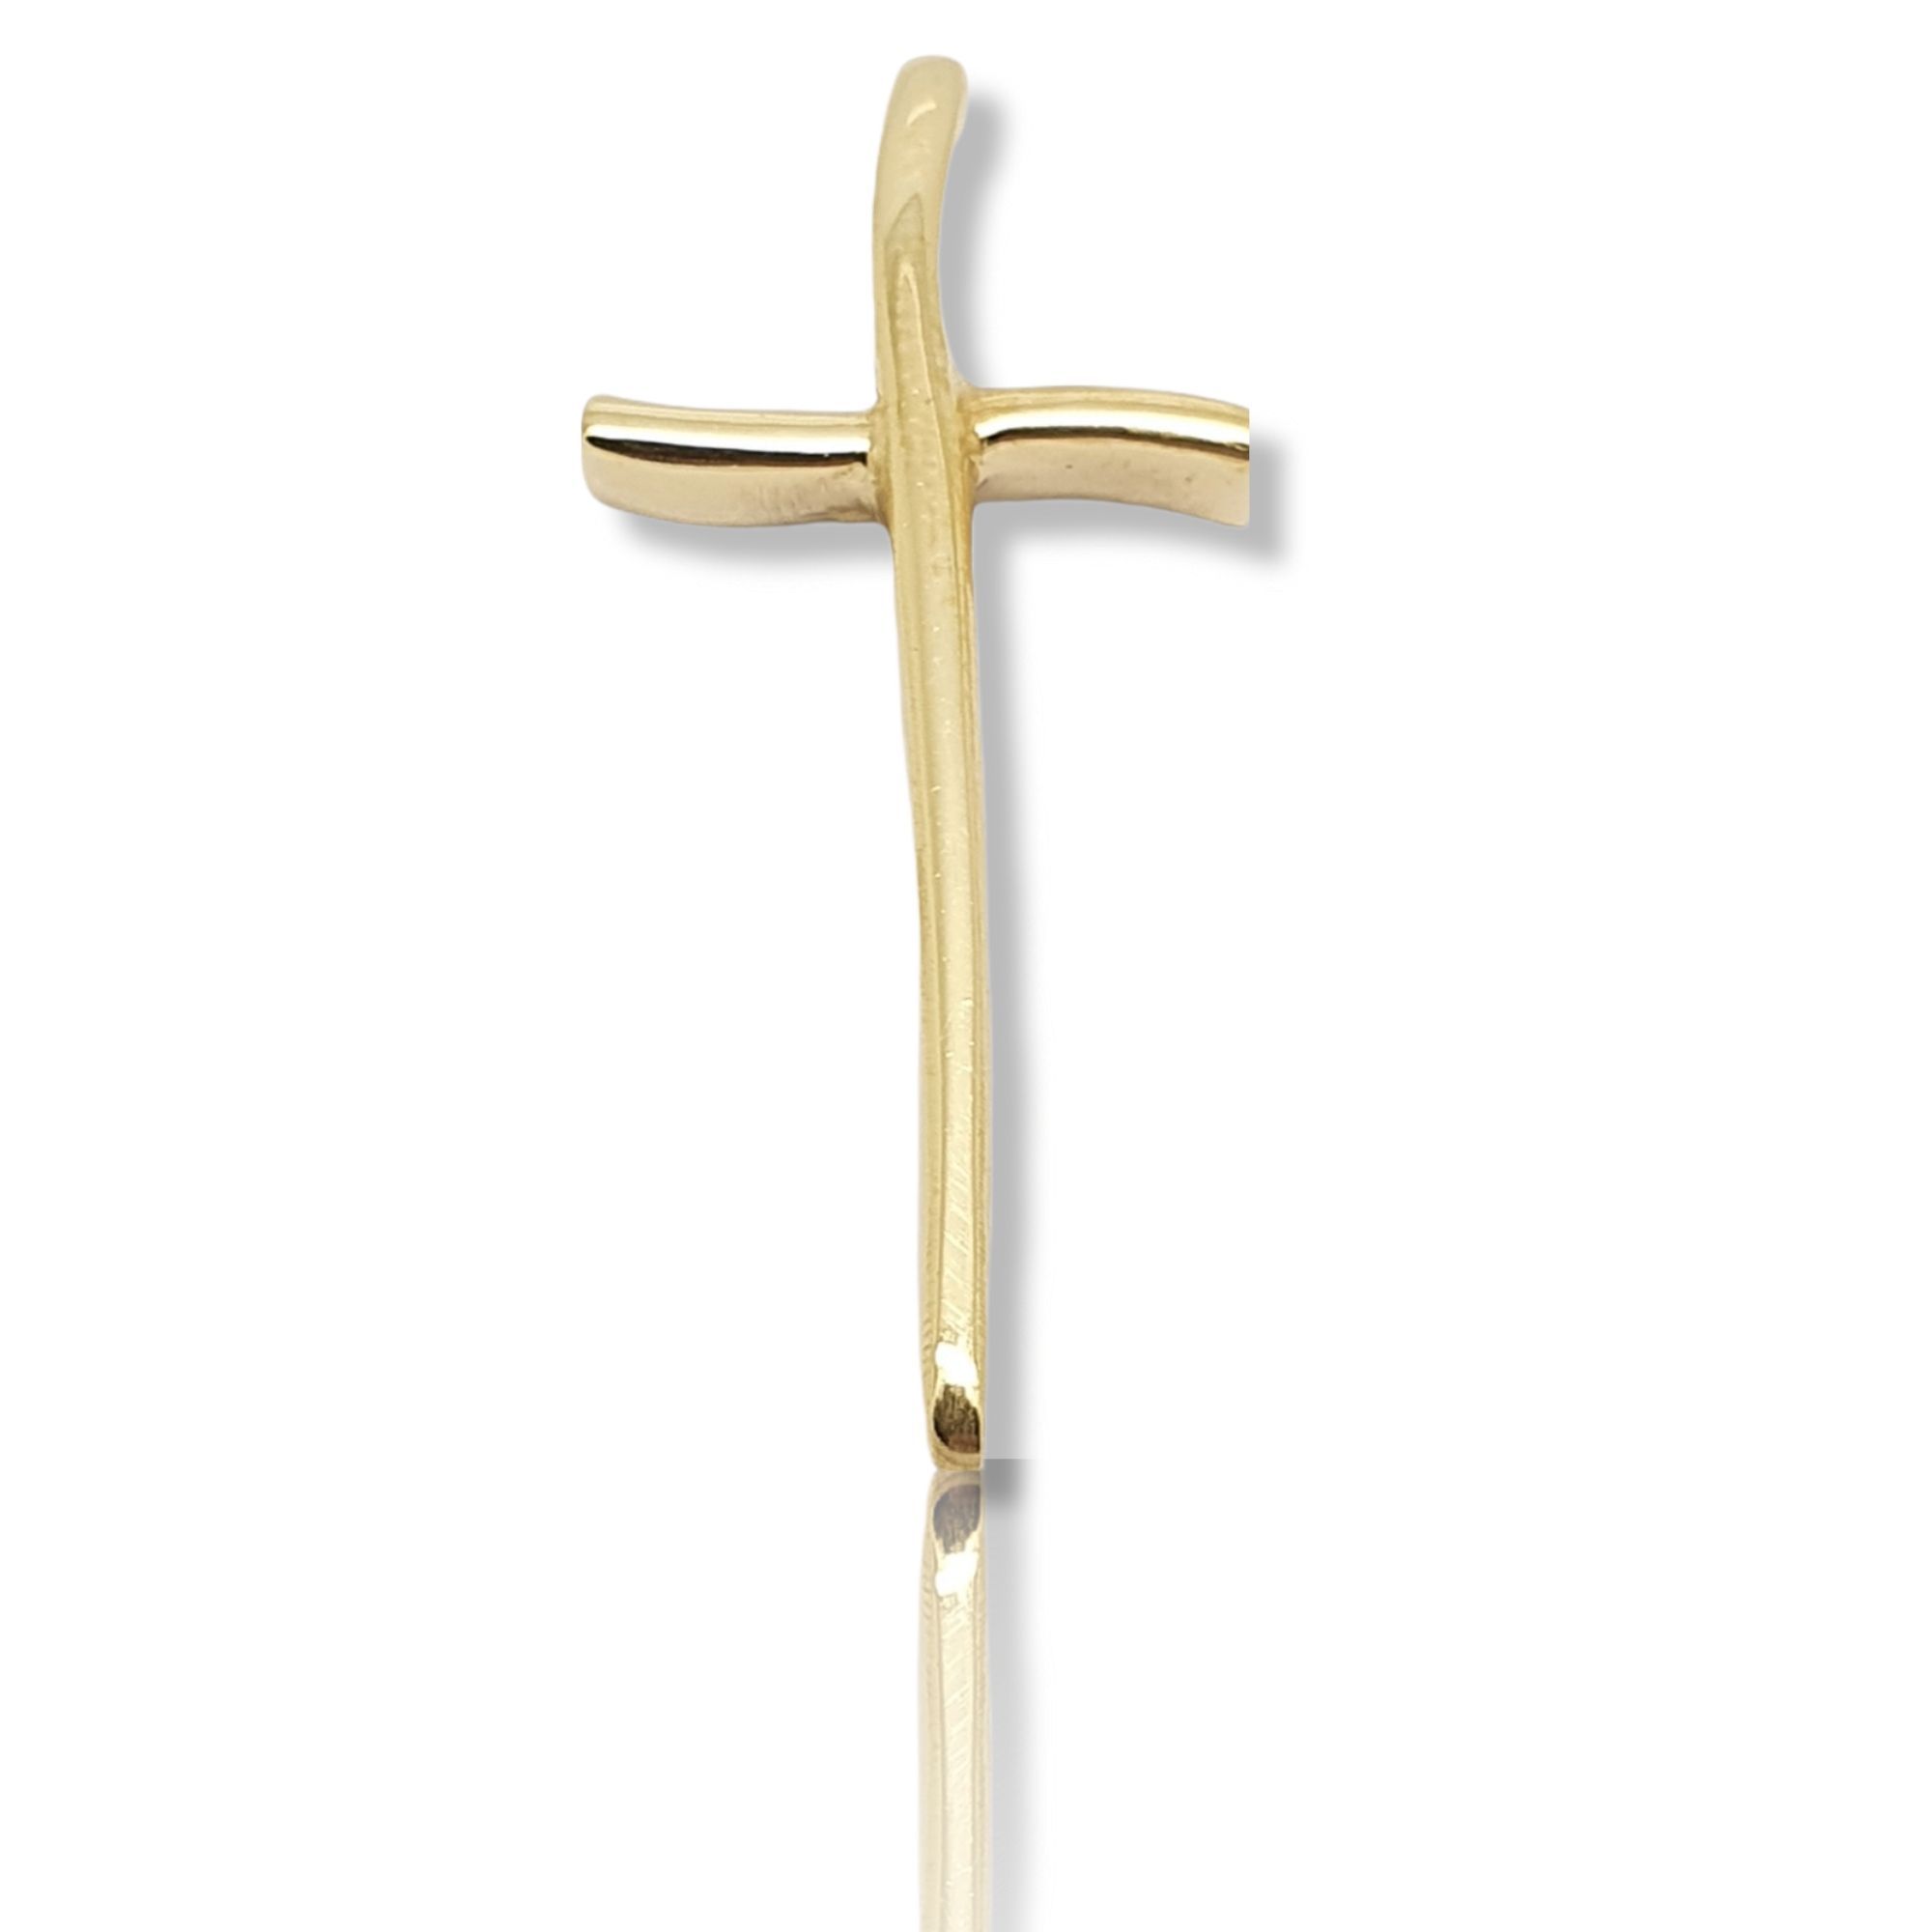 Golden sword cross k18  (code P2105)